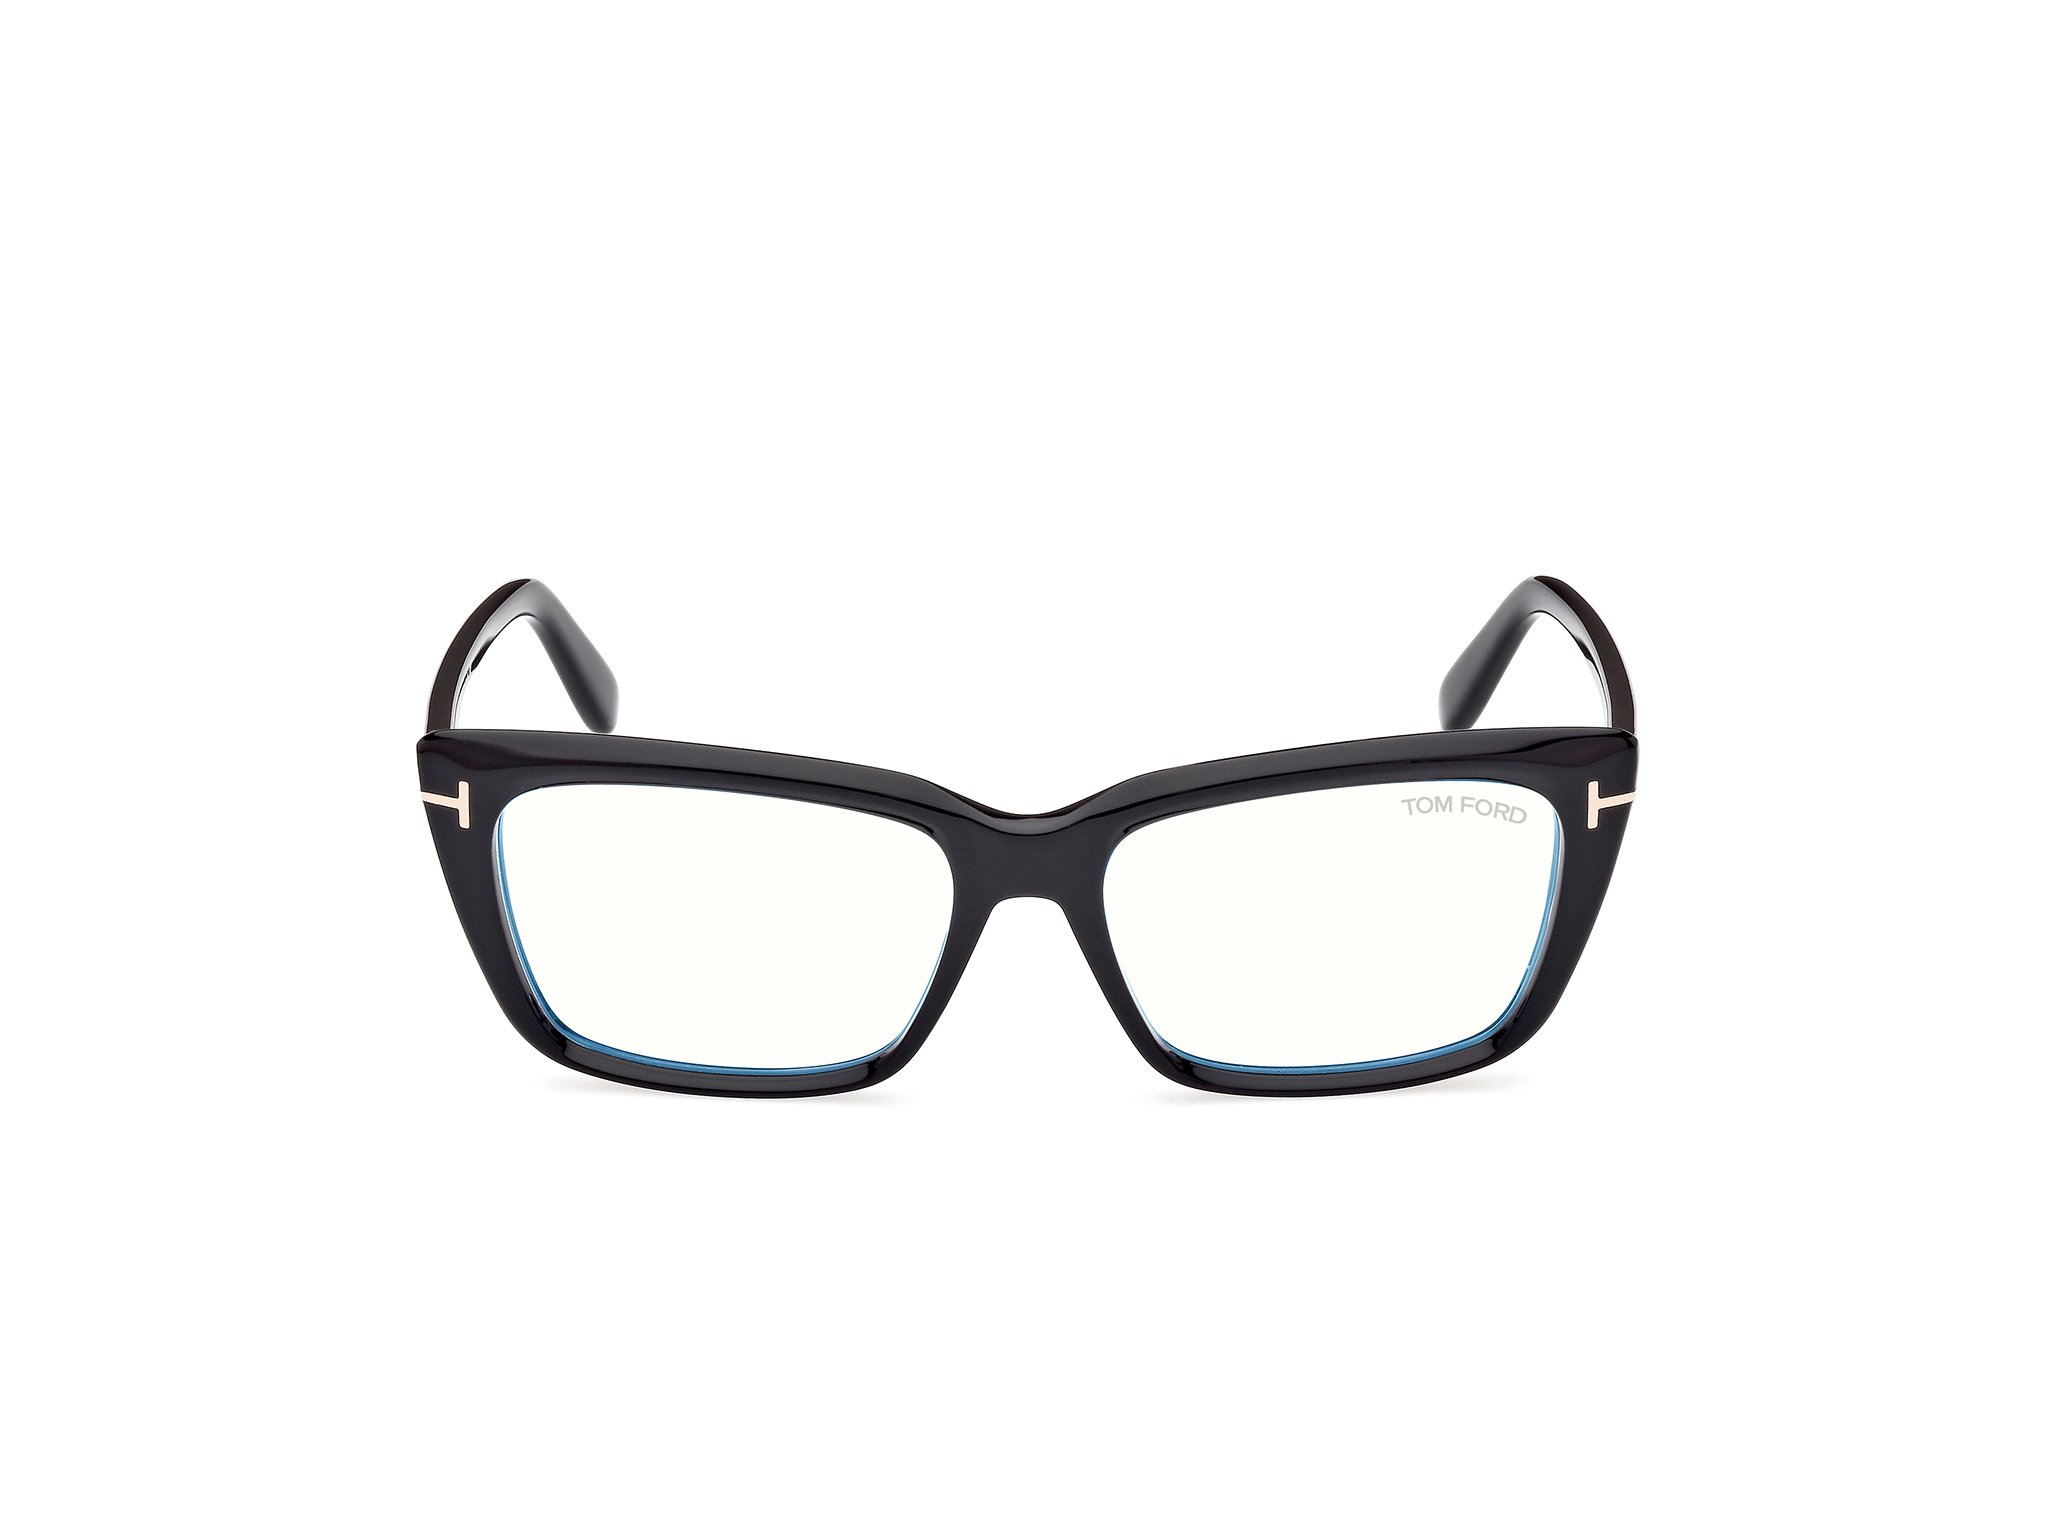 Das Bild zeigt die Korrektionsbrille FT5894-B 001 von der Marke Tom Ford in schwarz.